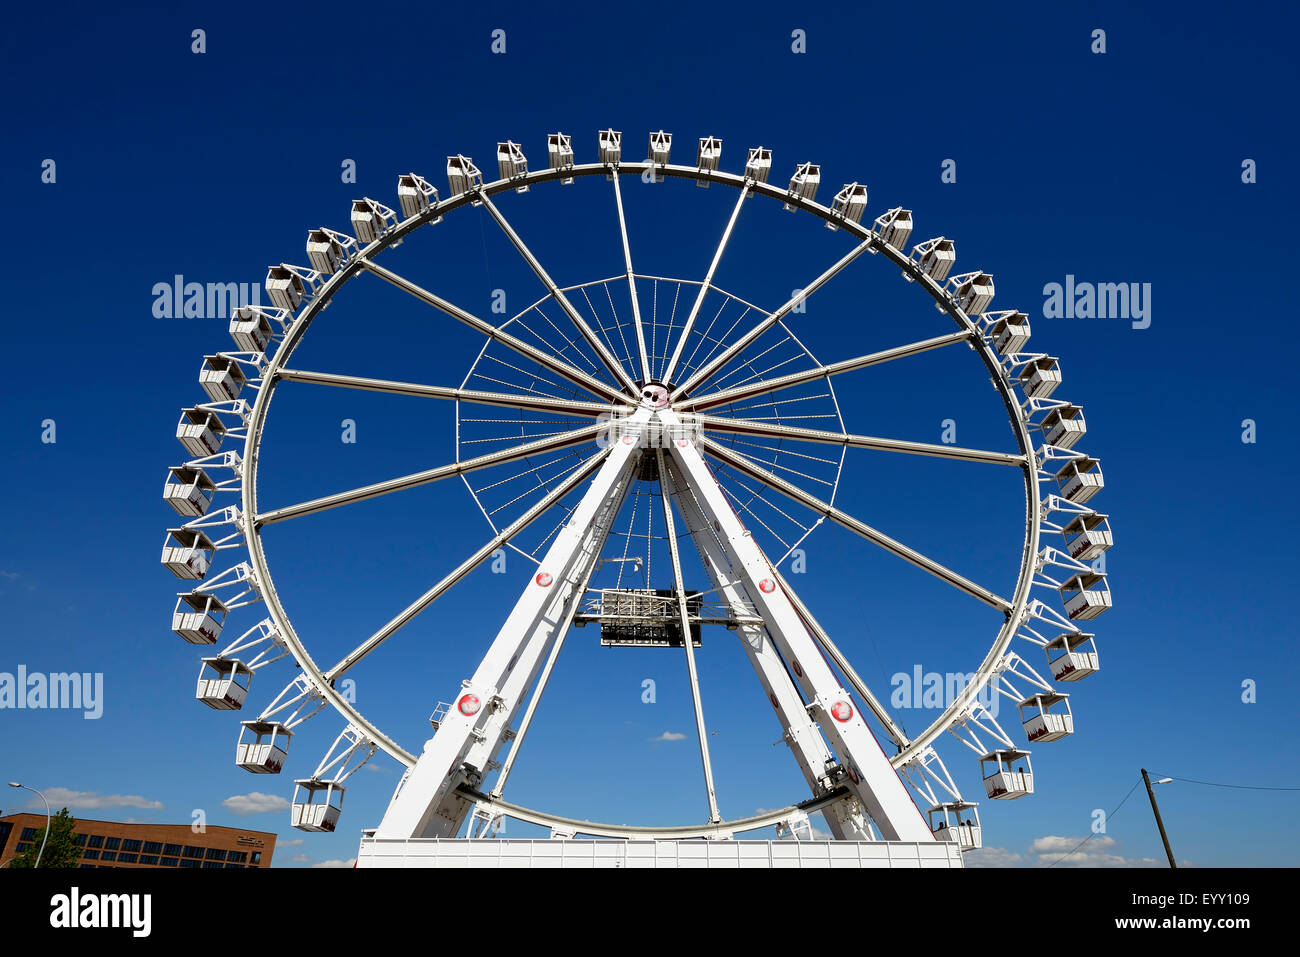 Ferris wheel at Strandkai in the harbor city, Hamburg, Germany Stock Photo